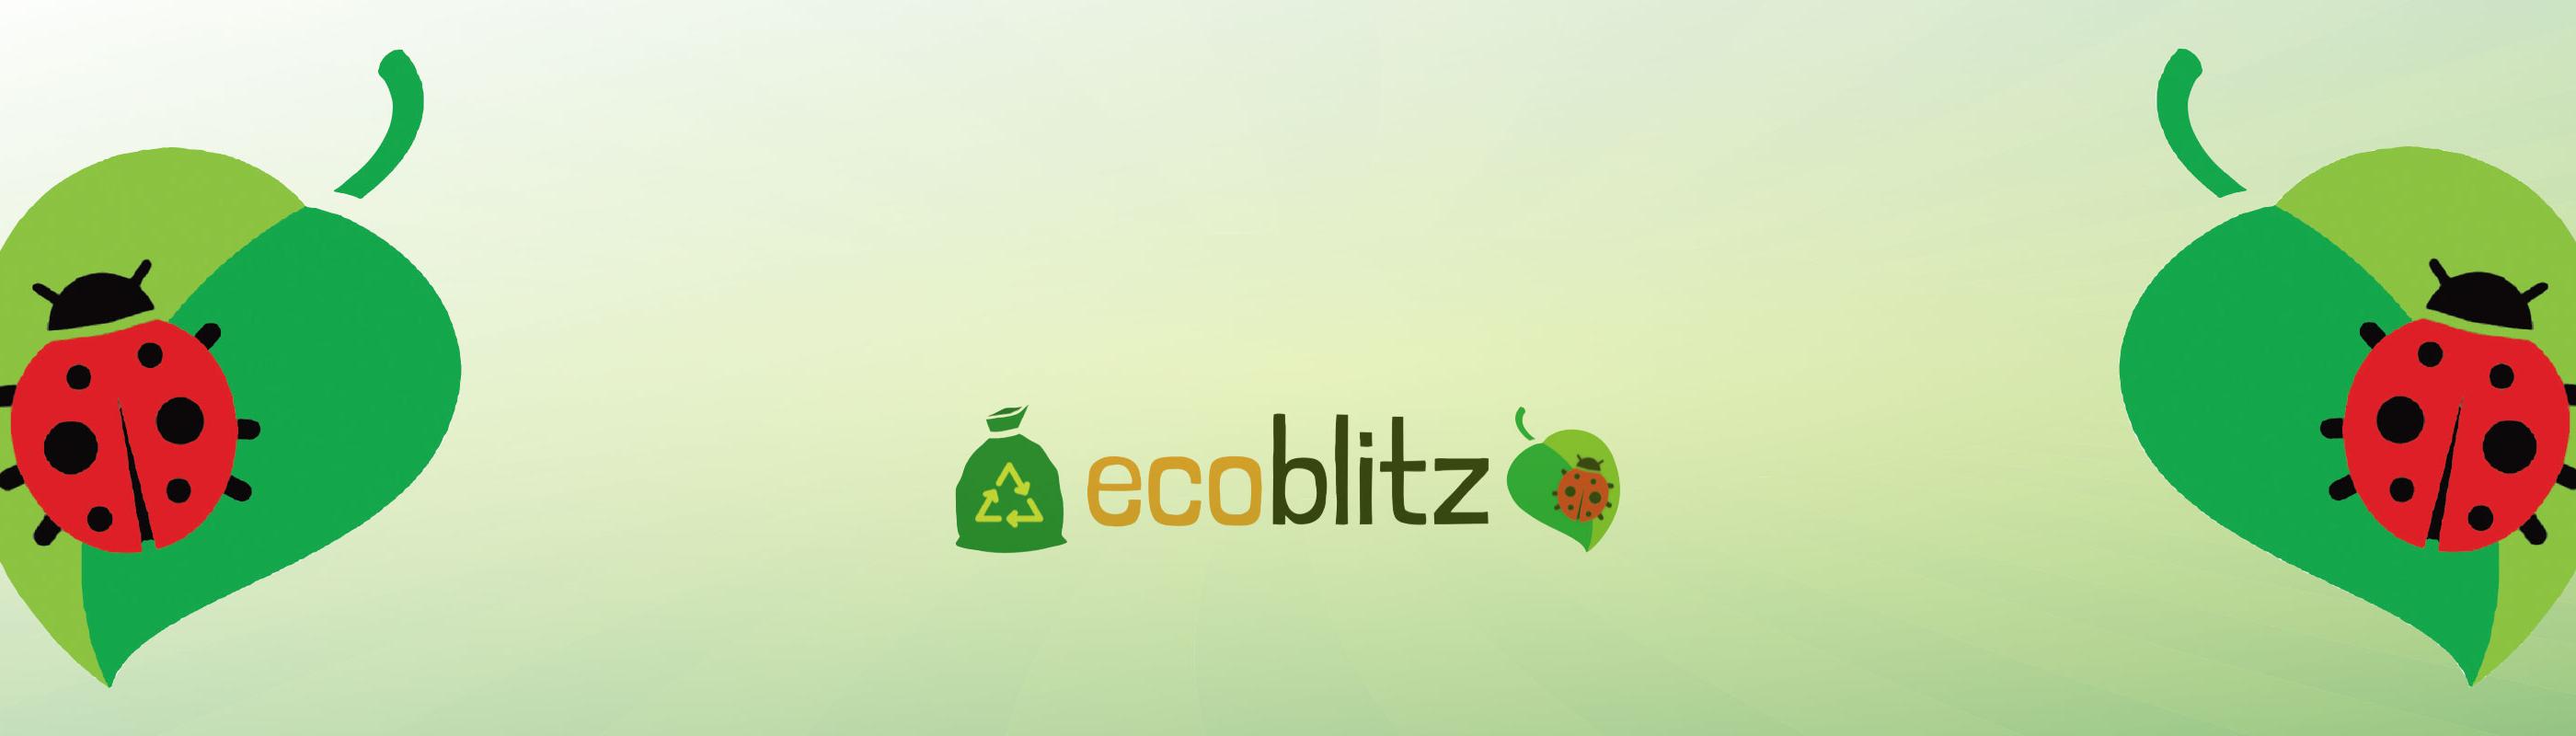 Ecoblitz